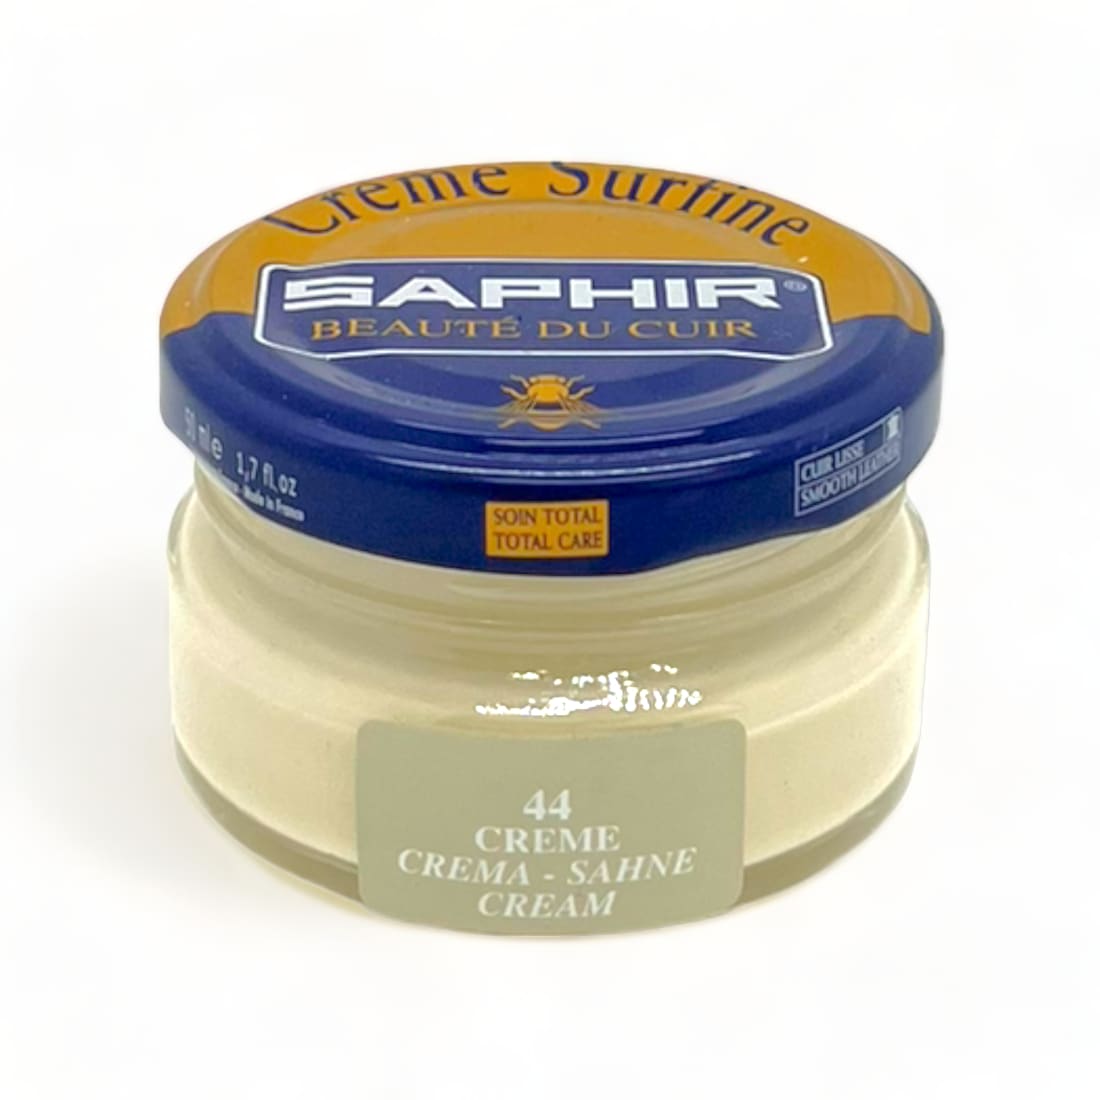 Cirage Crème Surfine Crème - Saphir - 50 ml - Accessoires